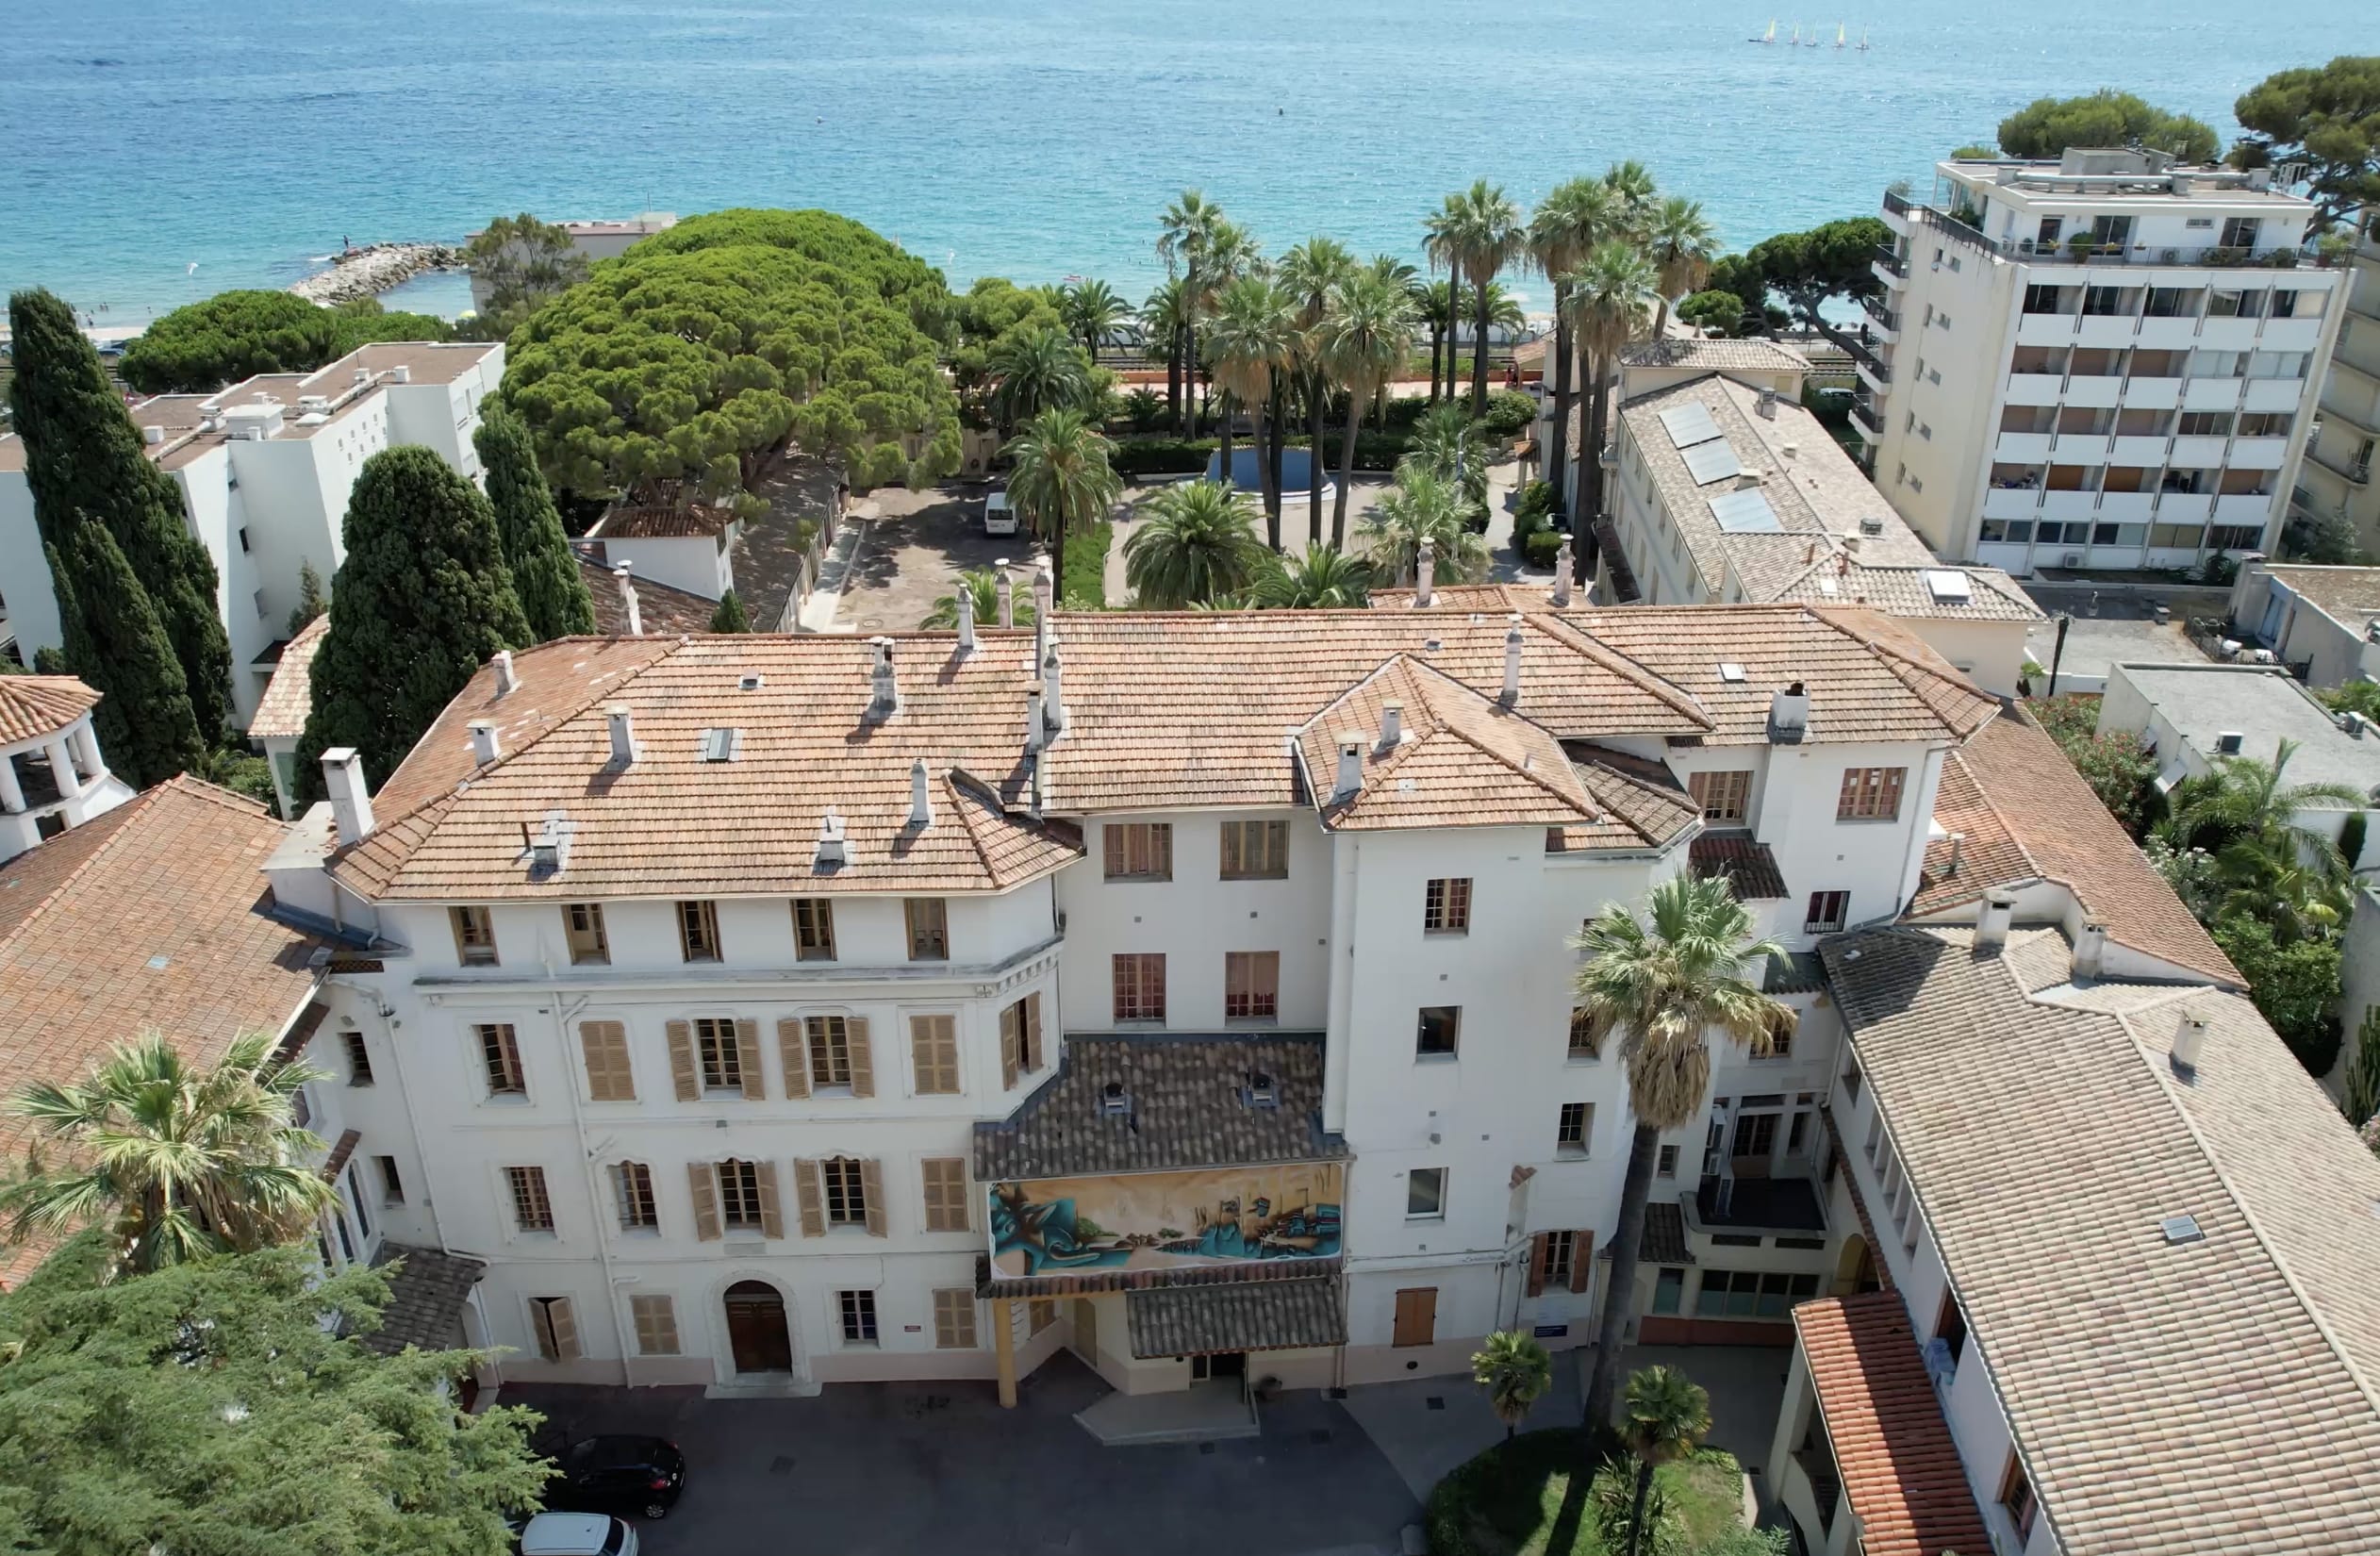 Hostel Santa Maria - French Riviera